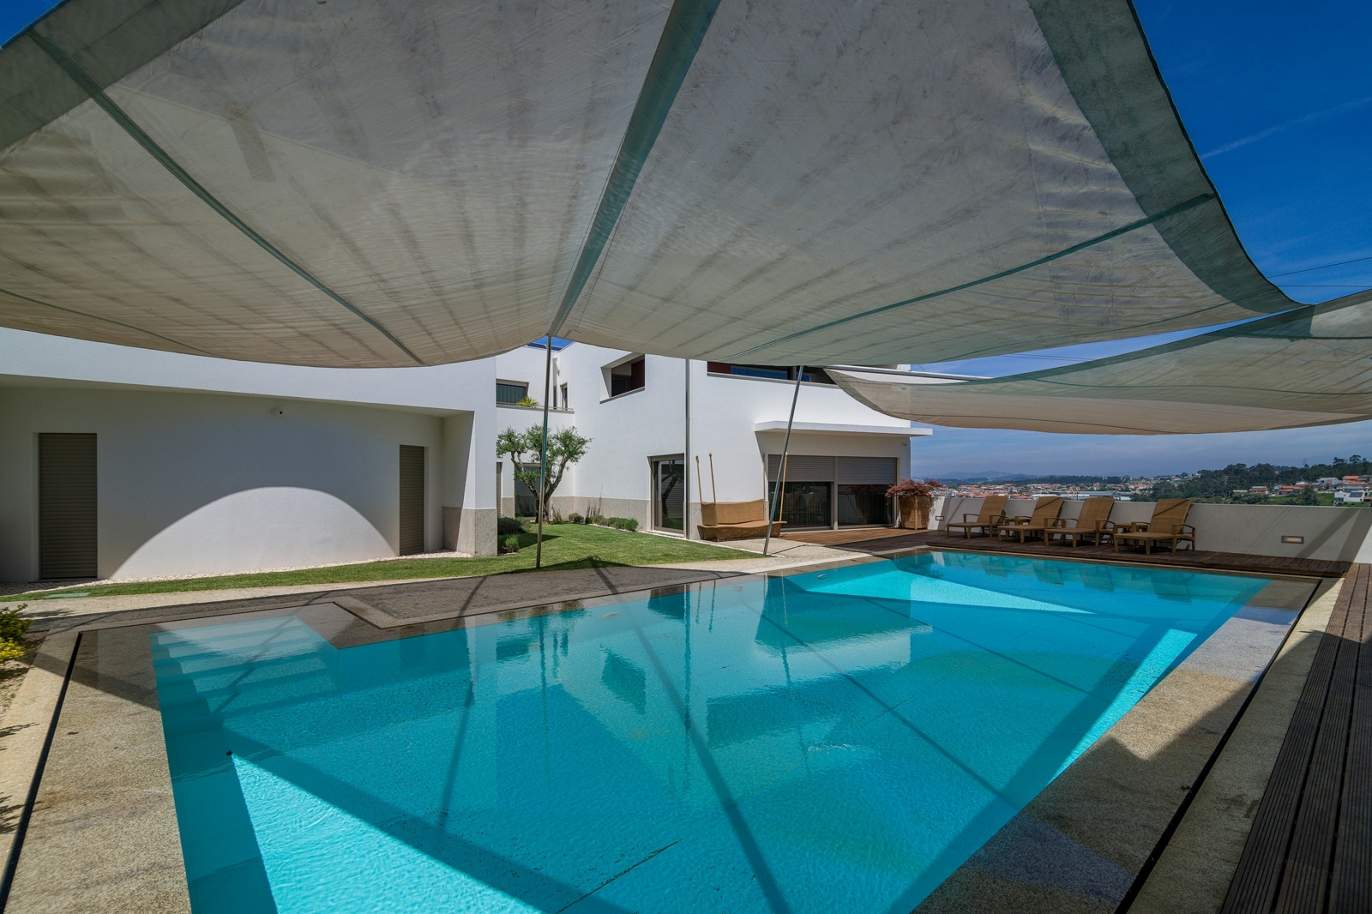 Moradia V3, com piscina e jardim, para venda, na Trofa, Porto _154946